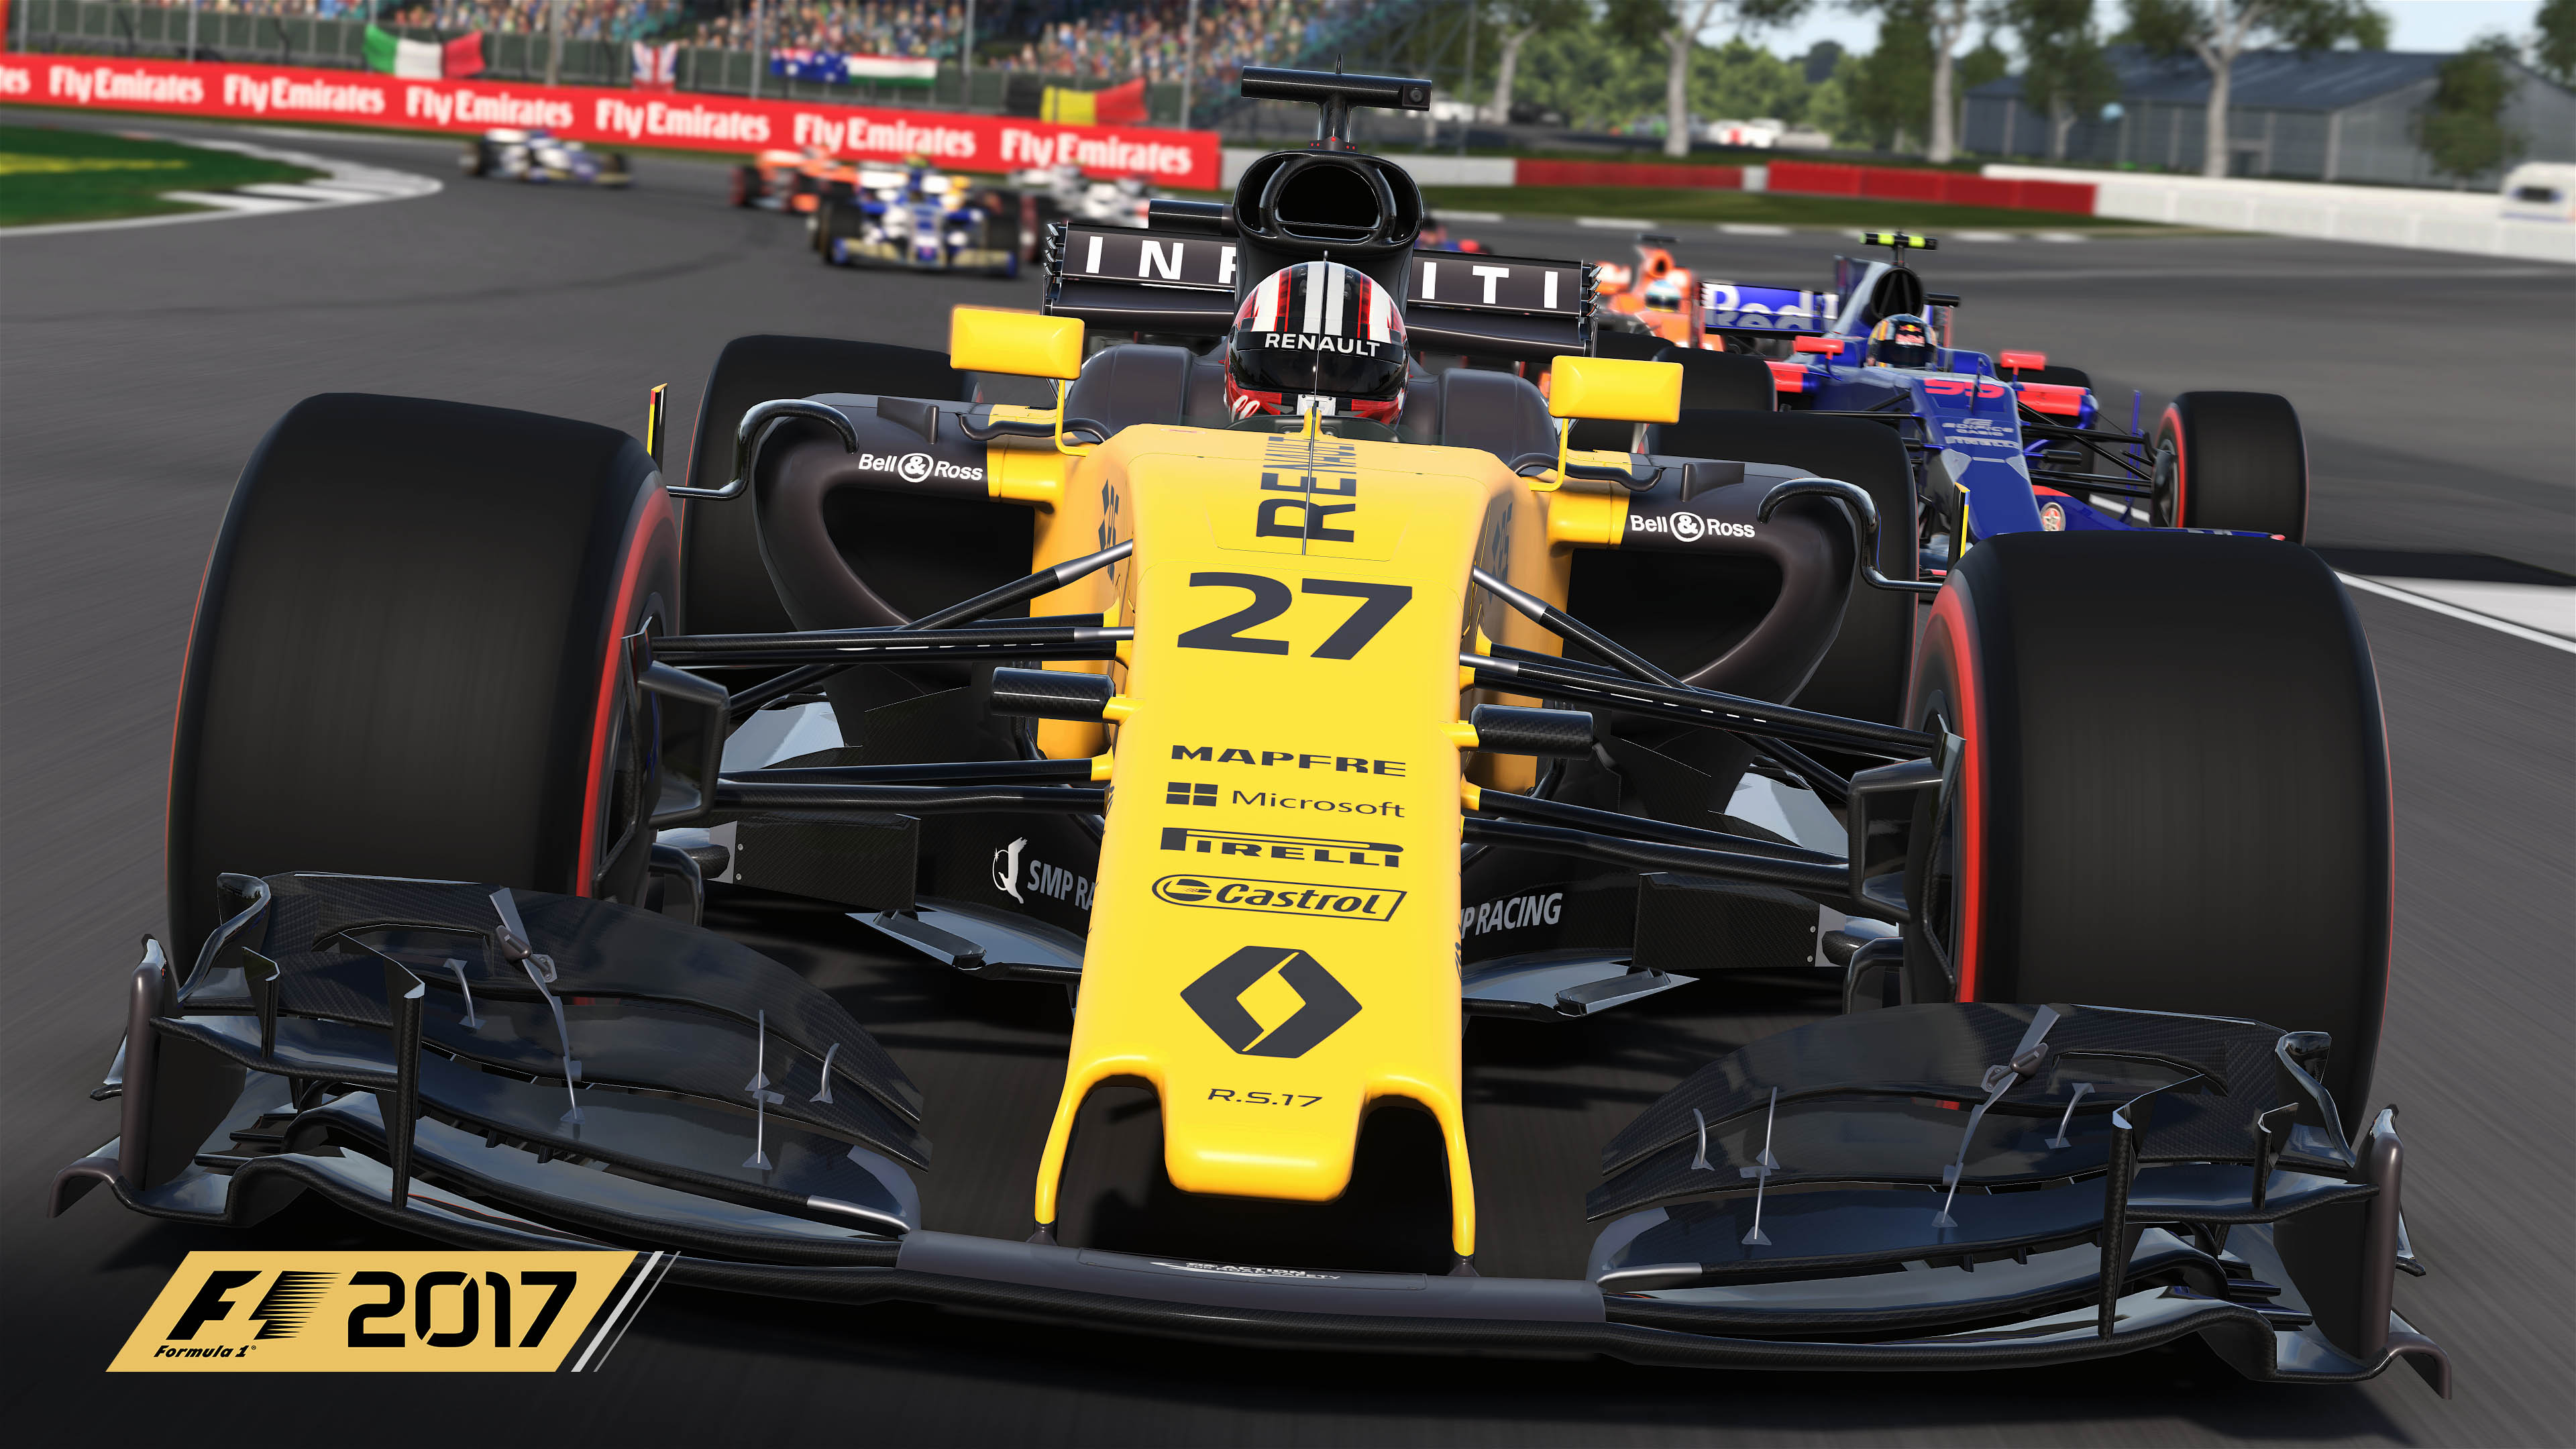 F1 2017 Update 1.jpg